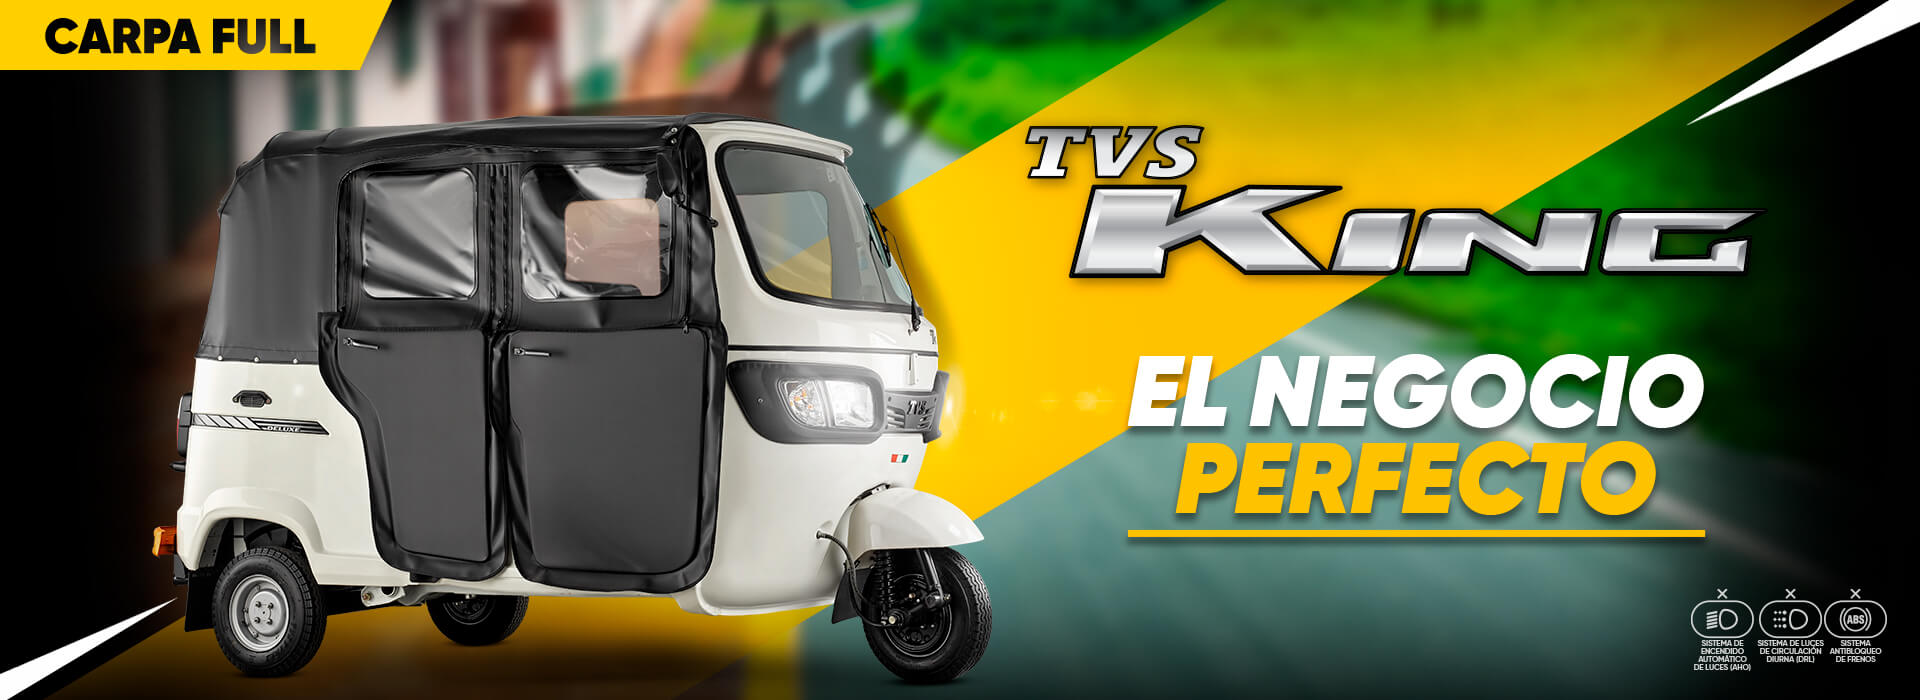 Motos TVS - King GS Full - Auteco